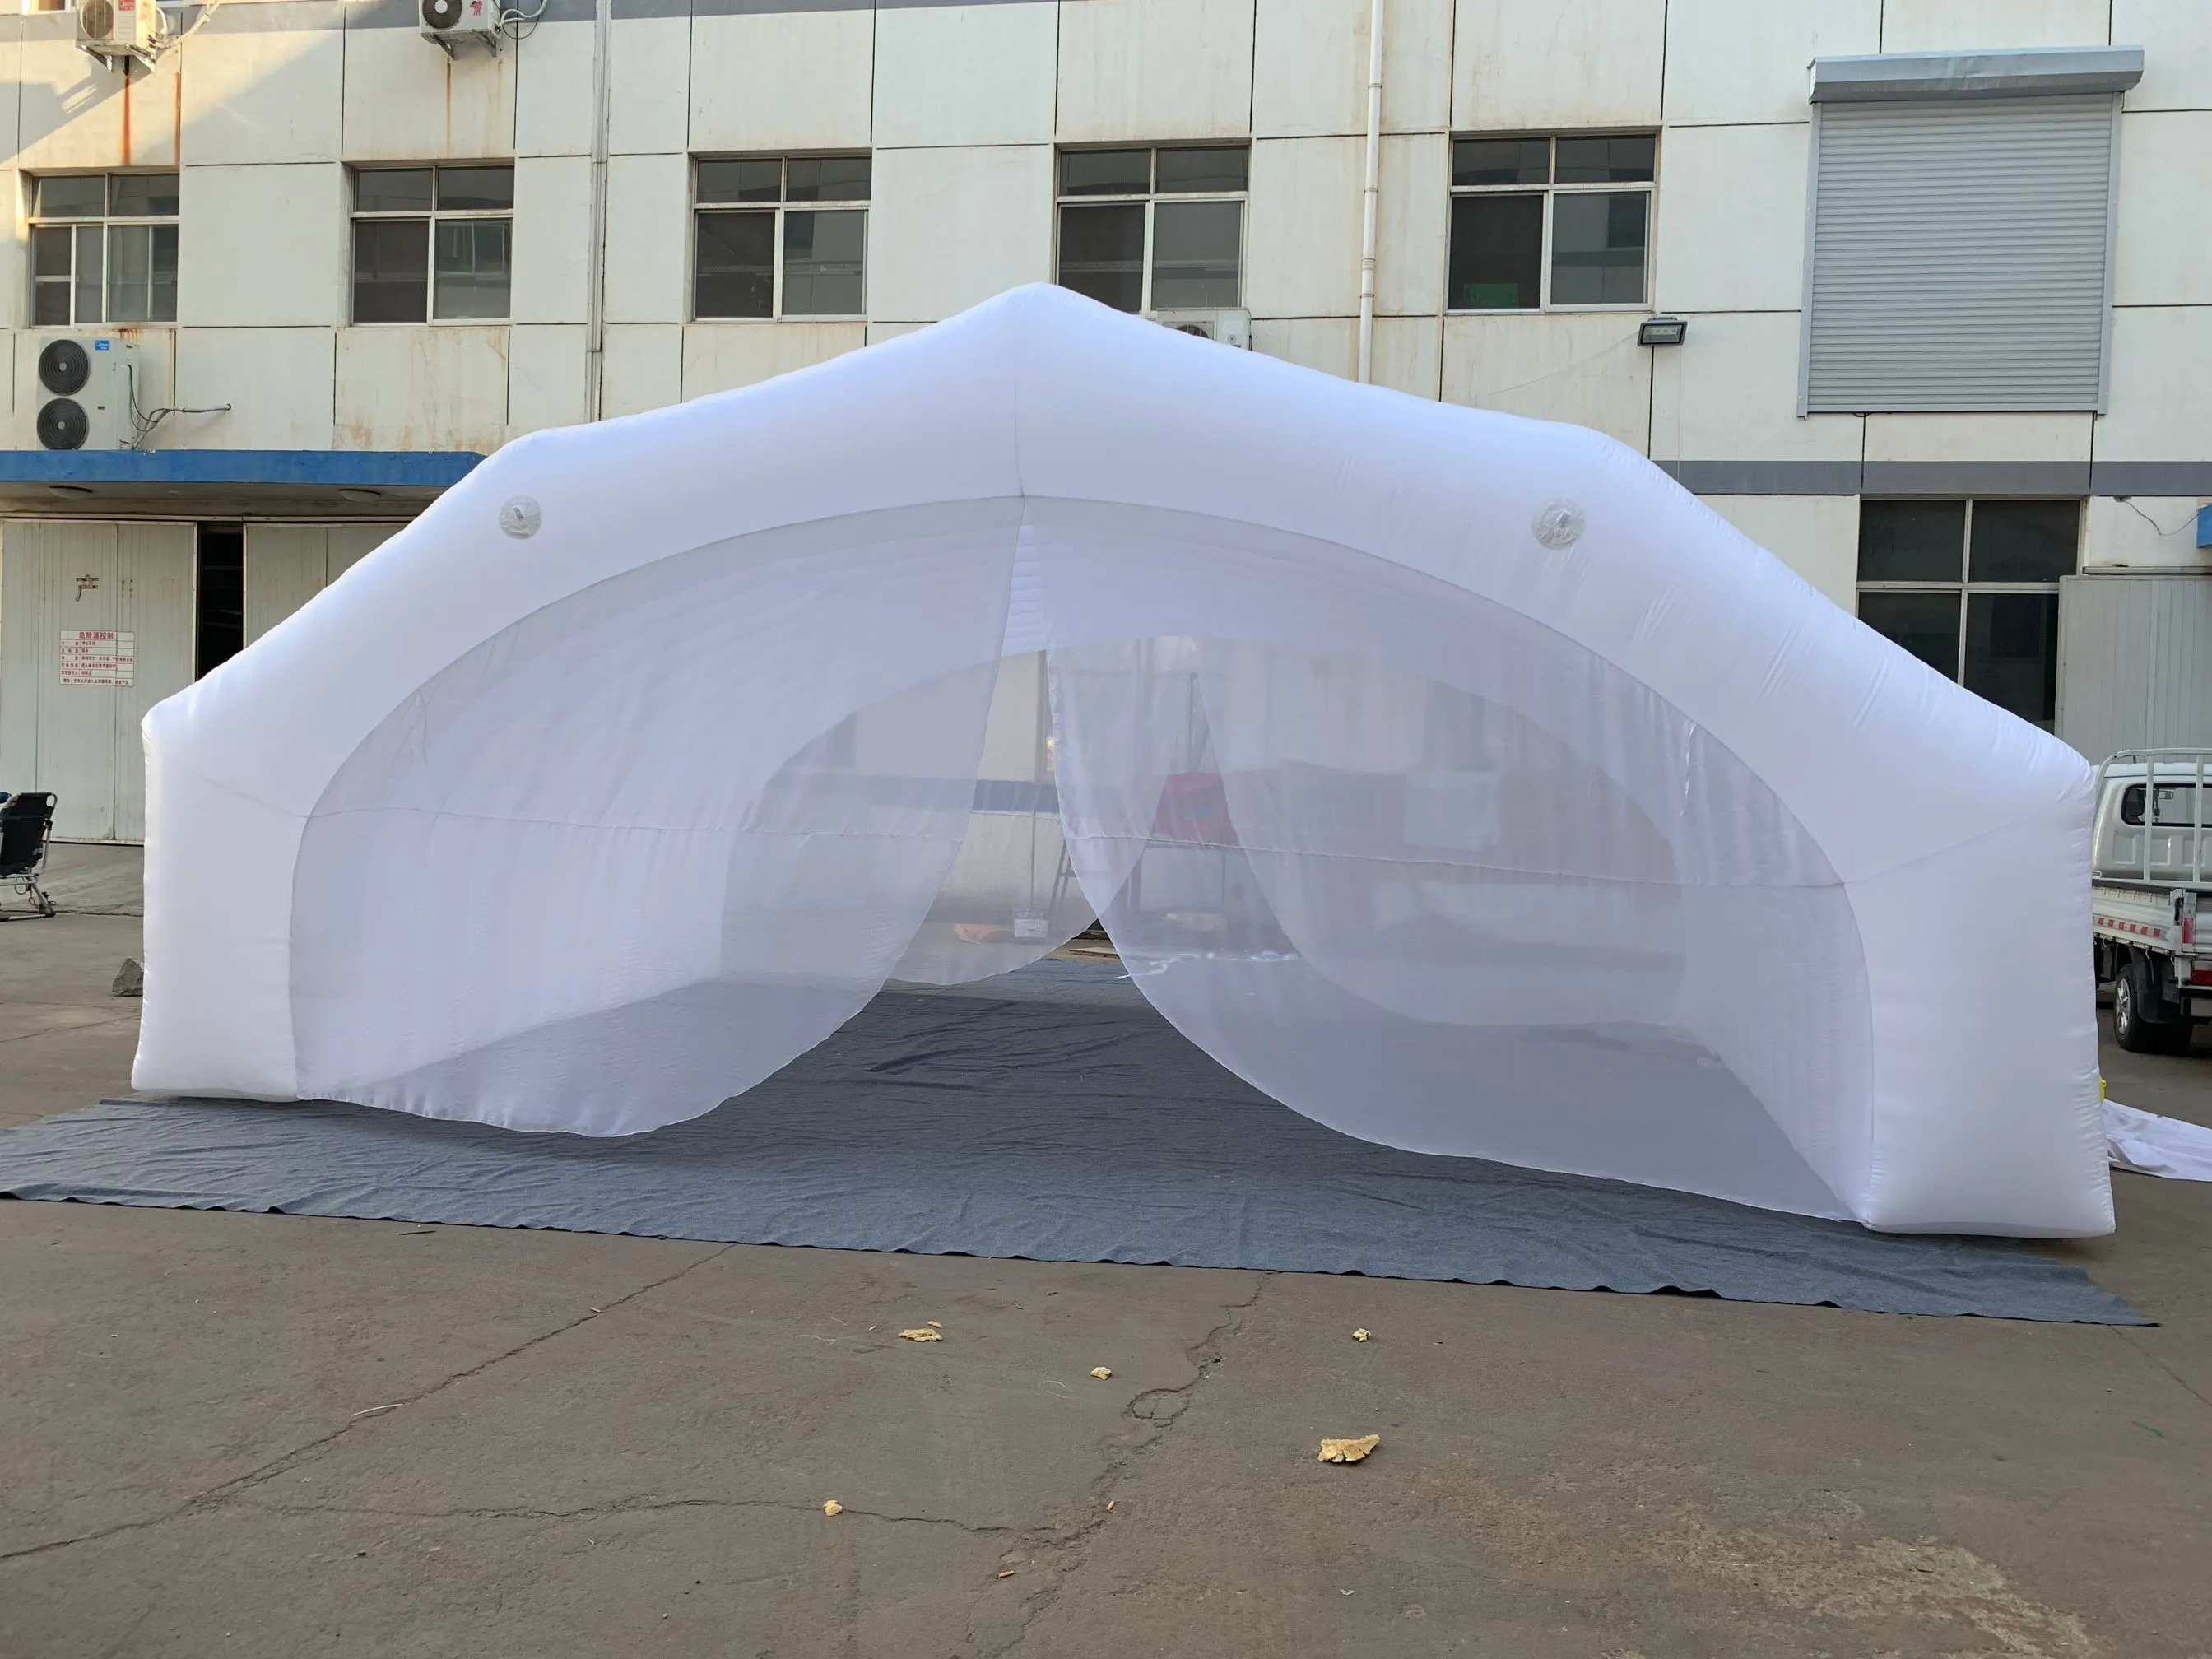 Cadre de tente publicitaire gonflable extérieur tunnel de tente blanche avec rideau pour l'adv fait 10 mlx8mwx5mh (33x26x16.5ft)